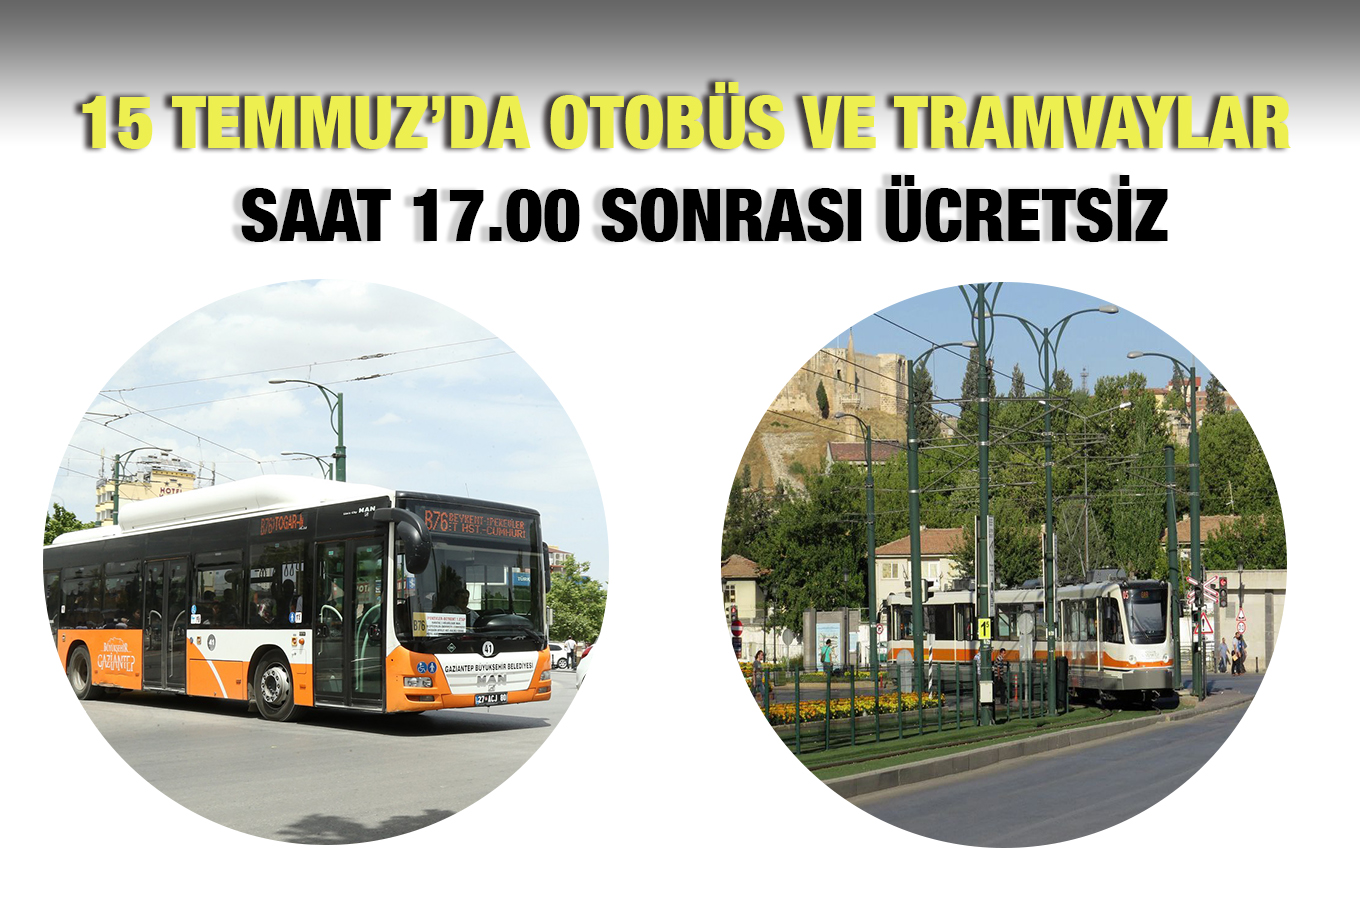 15 Temmuz'da otobüs ve tramway'lar ücretsiz